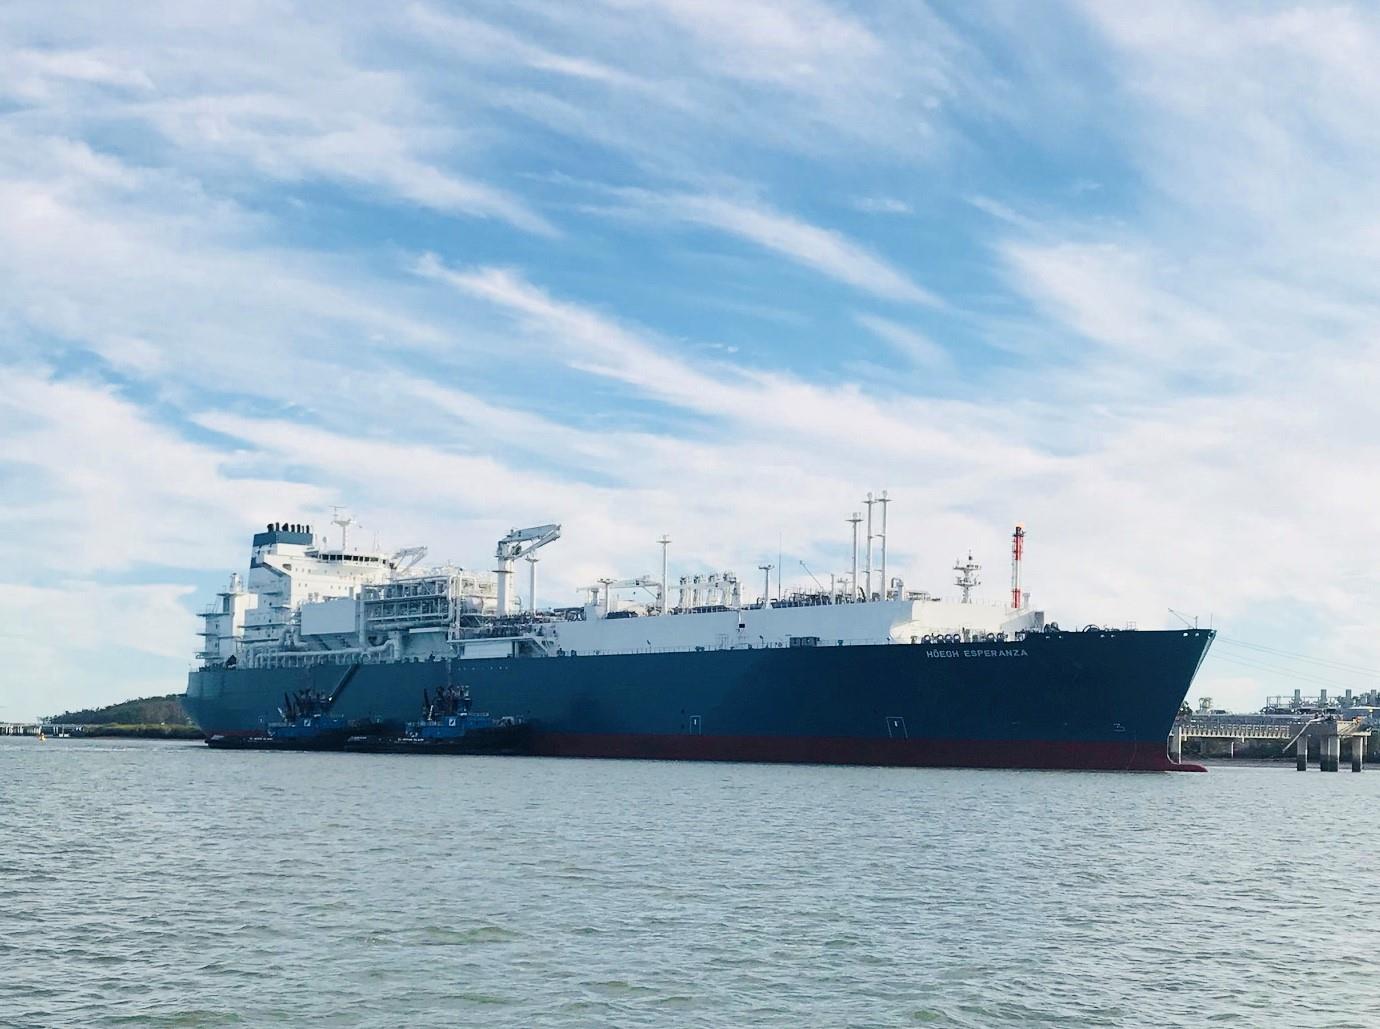 Höegh LNG claims first FSRU berth in Australia